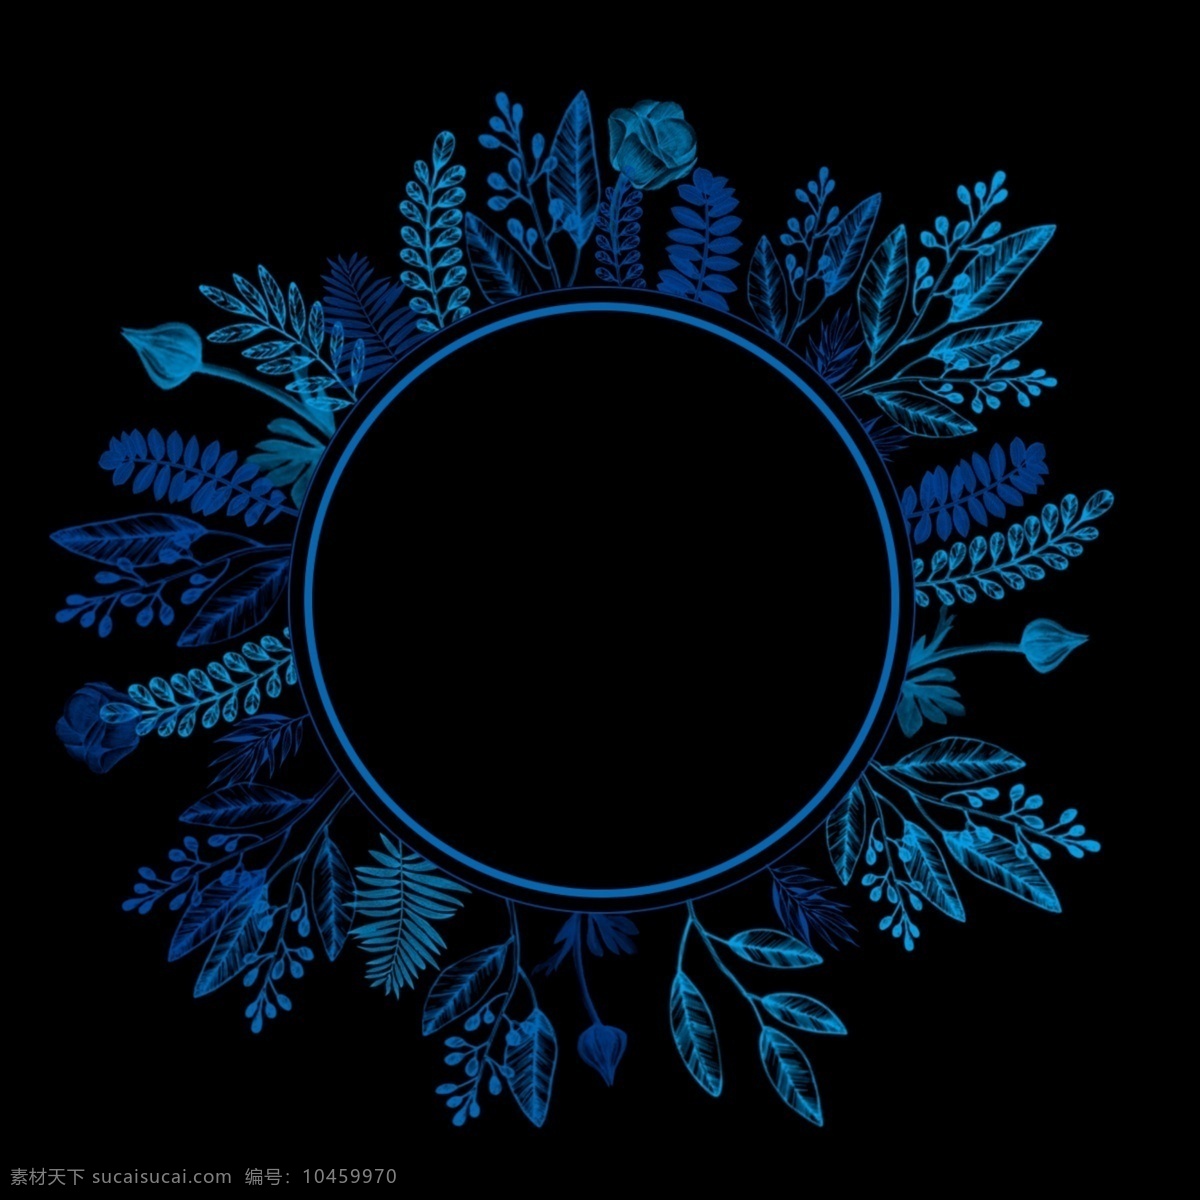 黑色 底 圆形 植物 背景 植物边框 banner 线稿图 花卉装饰画 蓝色边框